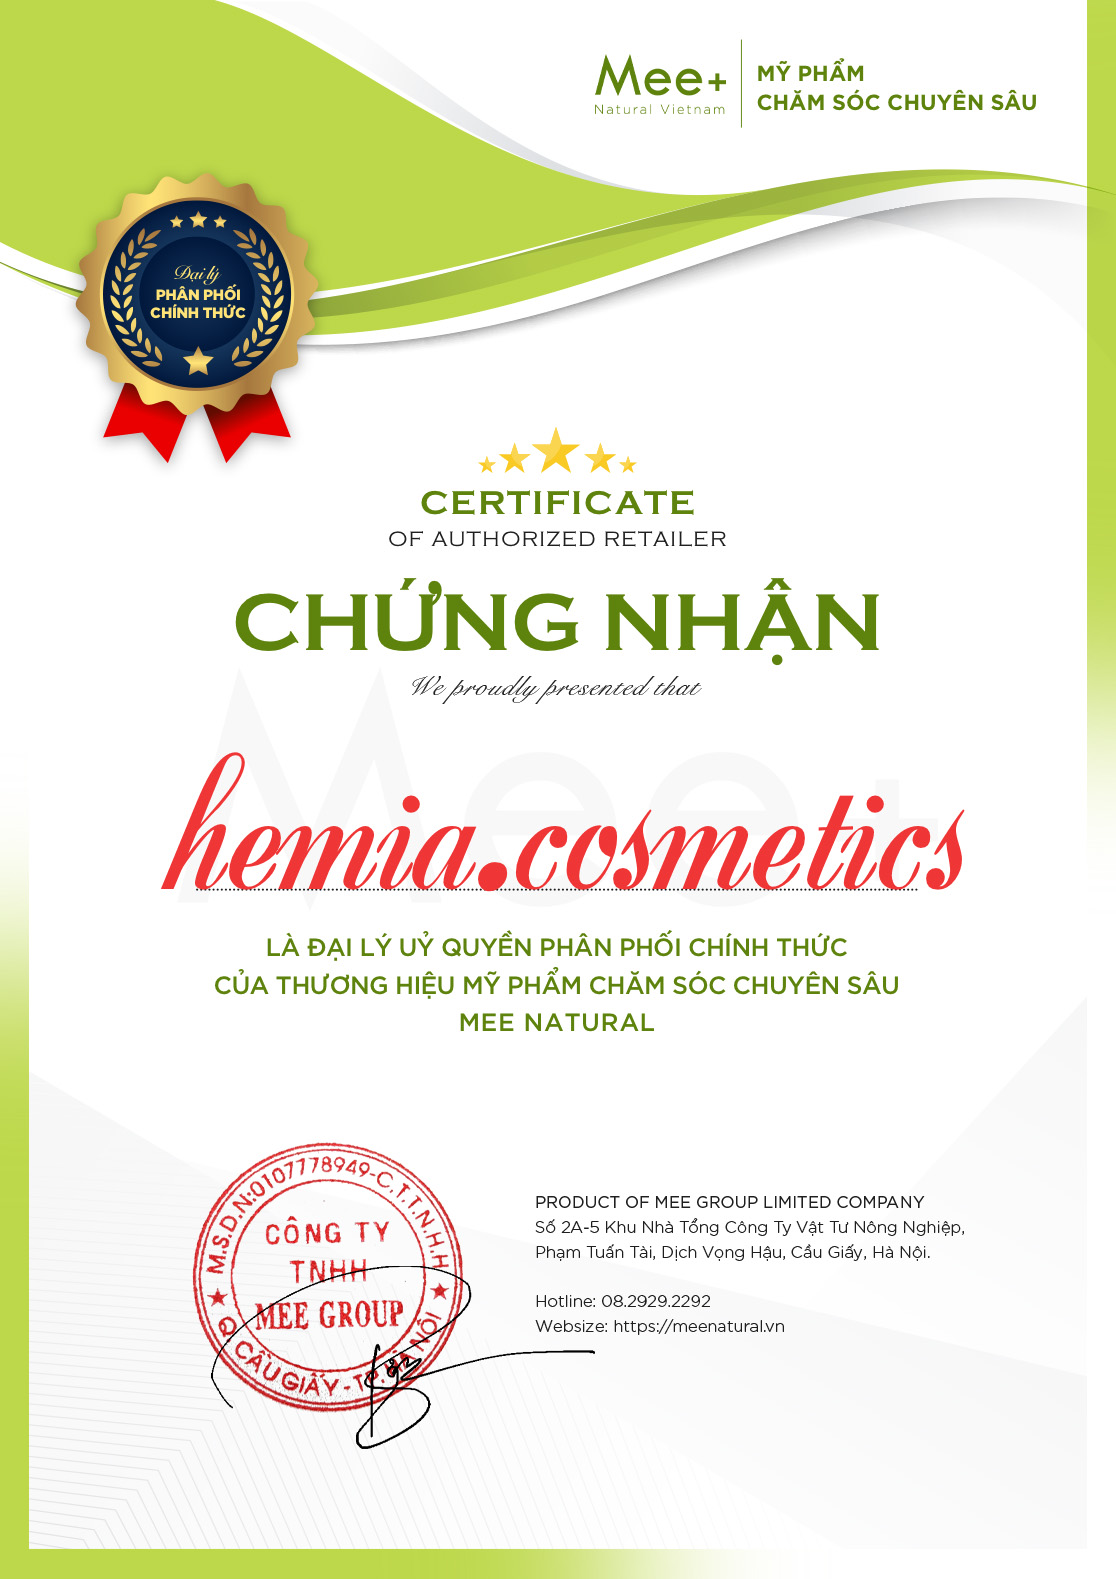 Chào mừng Hemia.cosmetics trở thành đại lý bán hàng chính thức tất cả sản phẩm của Mee Natural